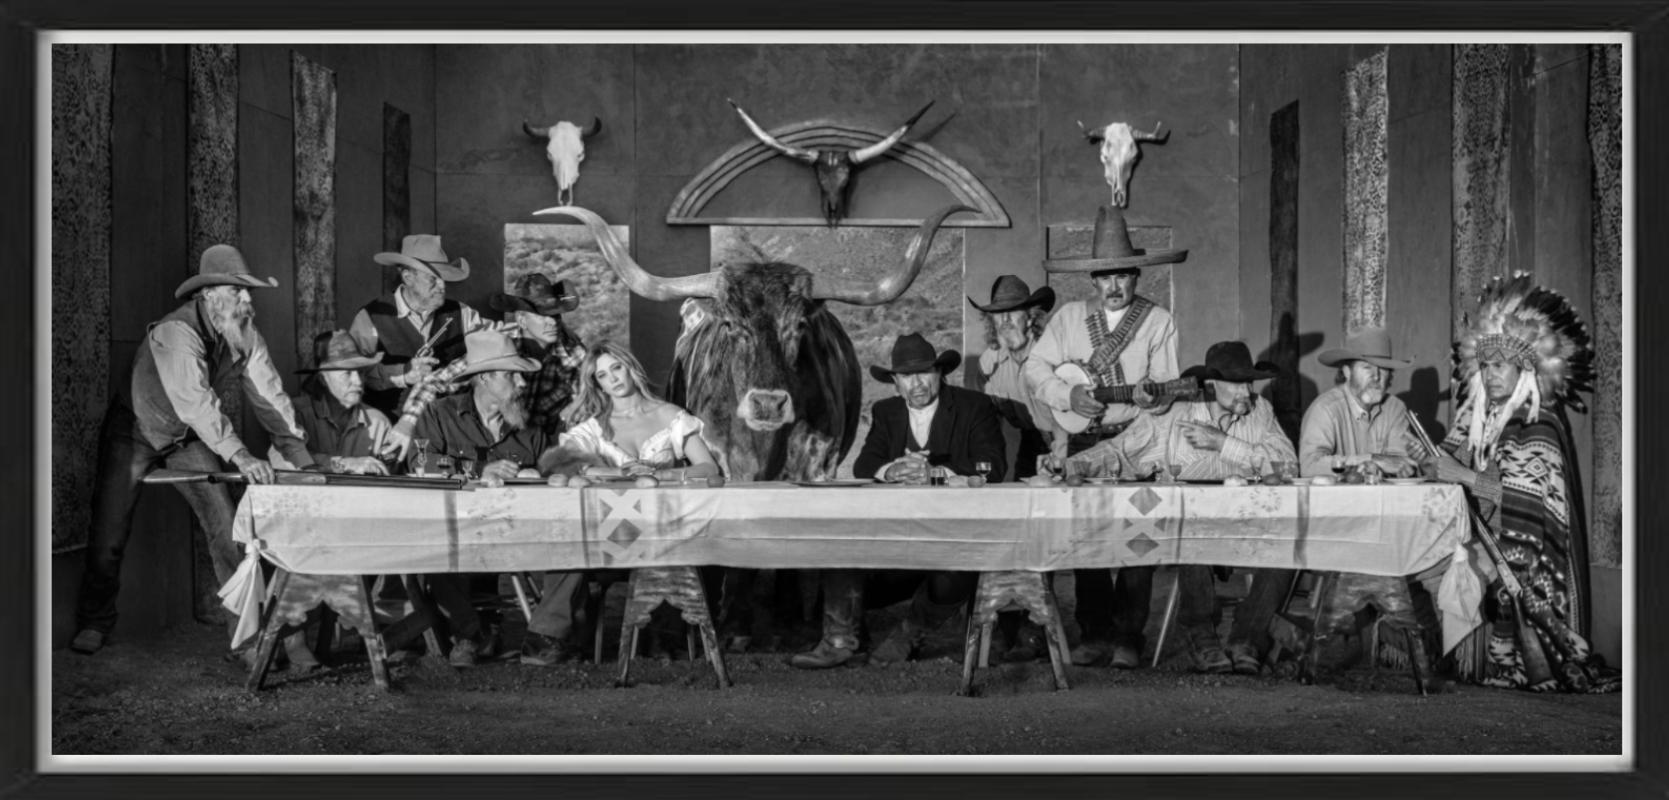 David Yarrow Black and White Photograph – Ein Abendessen in Texas - Modell und Cowboys im Western-Look